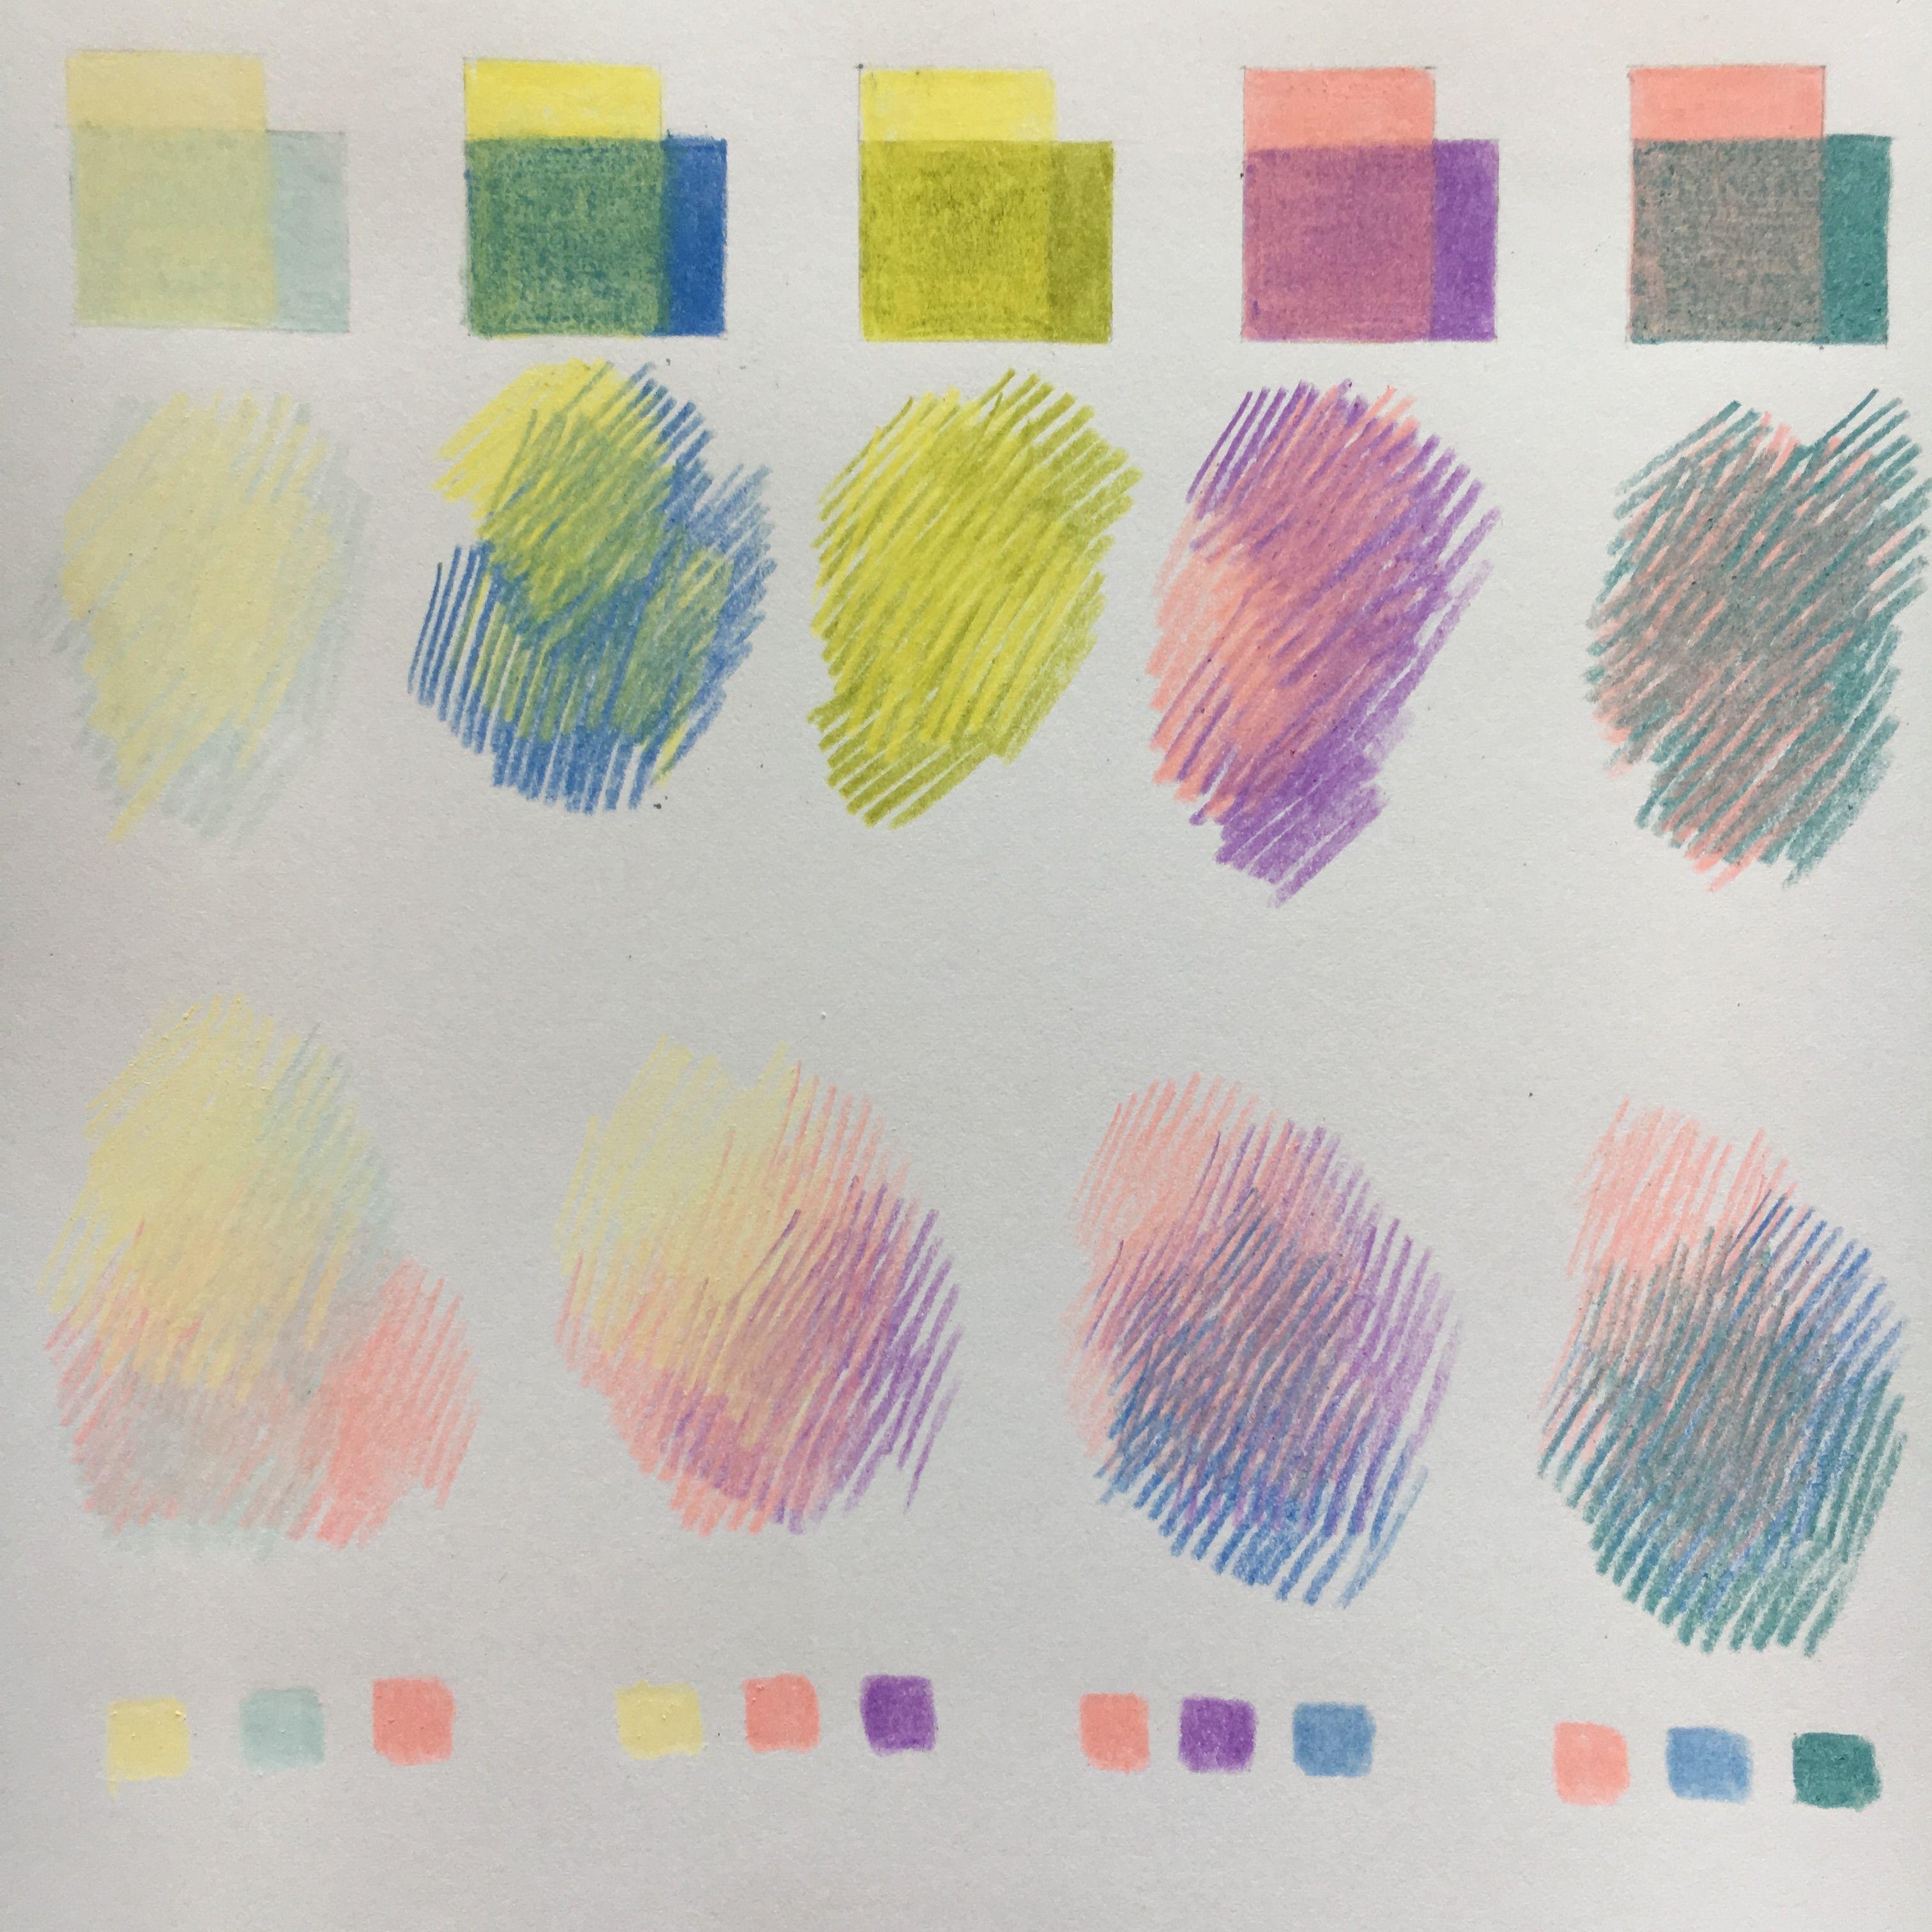 Сделать рисунок в цвете. Смешение цветов цветными карандашами. Рисование цветными карандашами. Цветовые растяжки цветными карандашами. Смешивание цветов цветными карандашами.